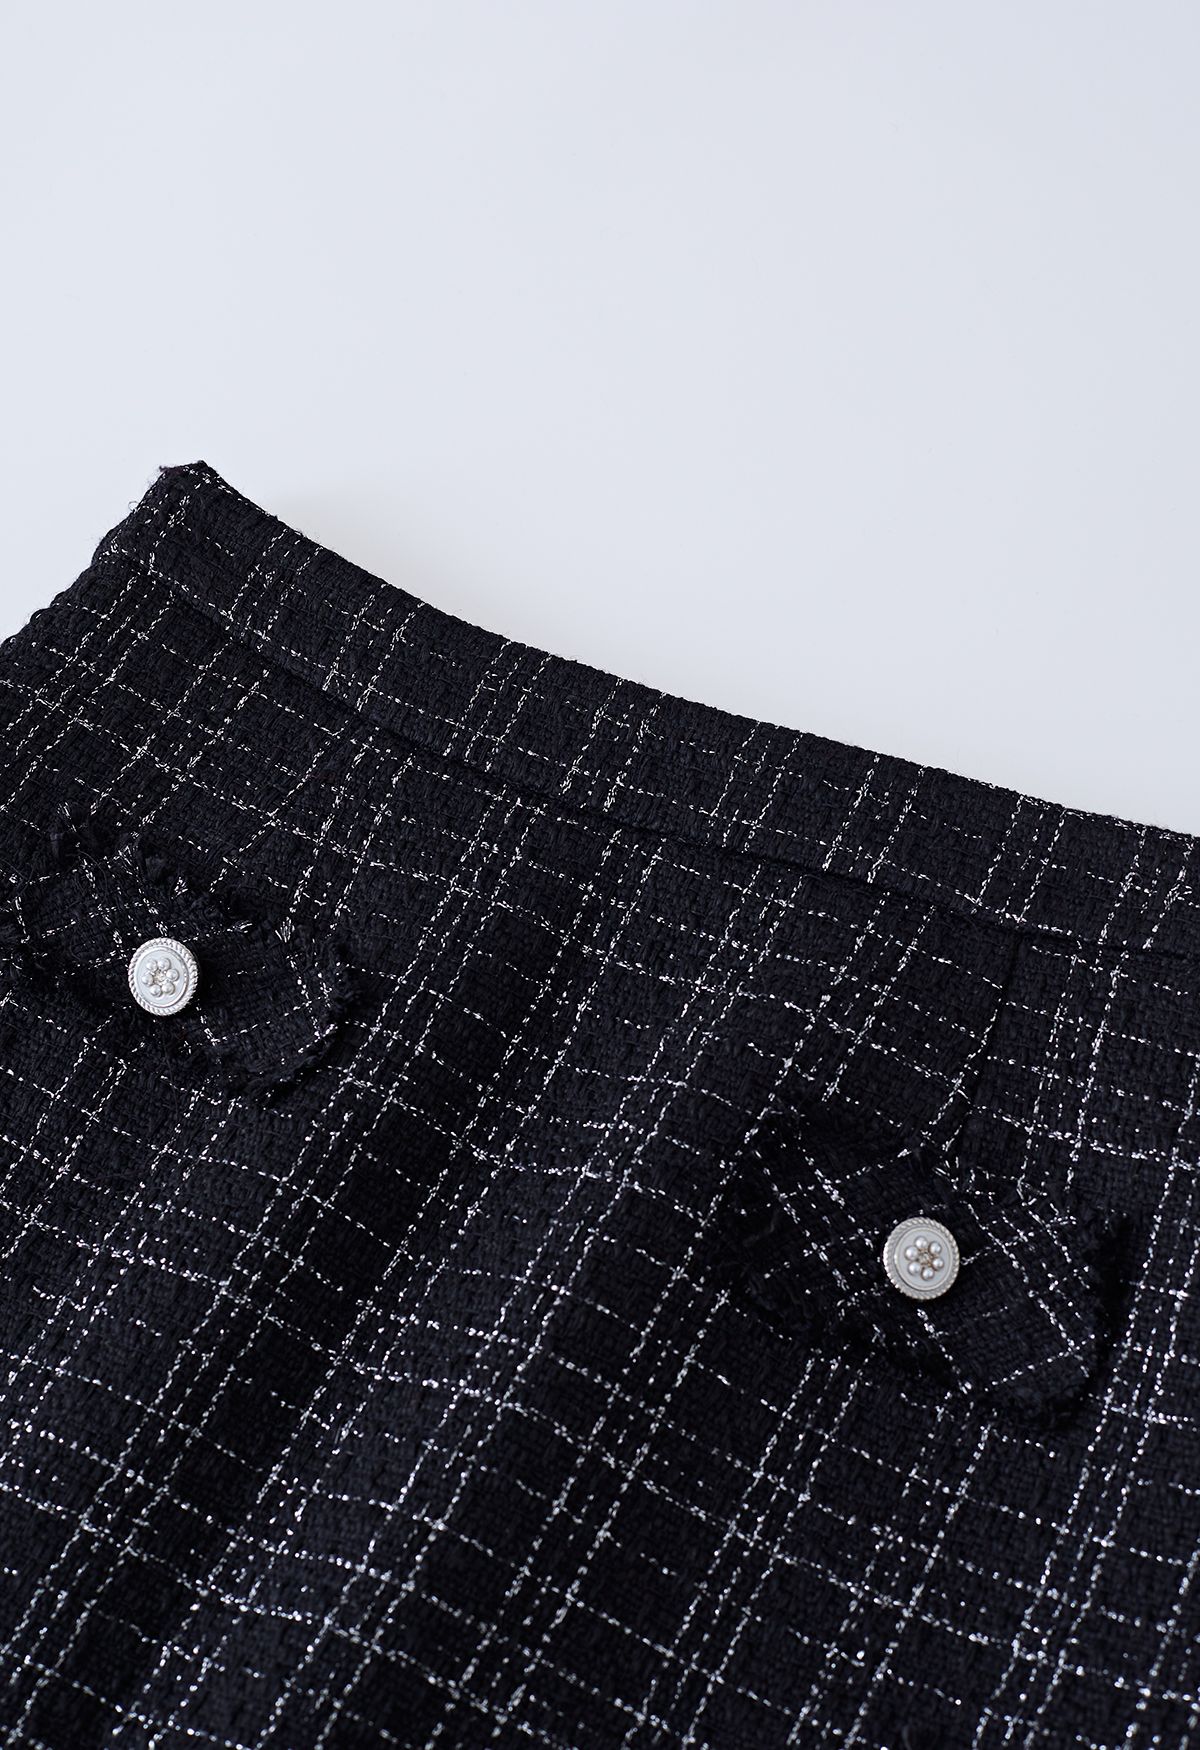 Grid Tweed Mini Bud Skirt in Black